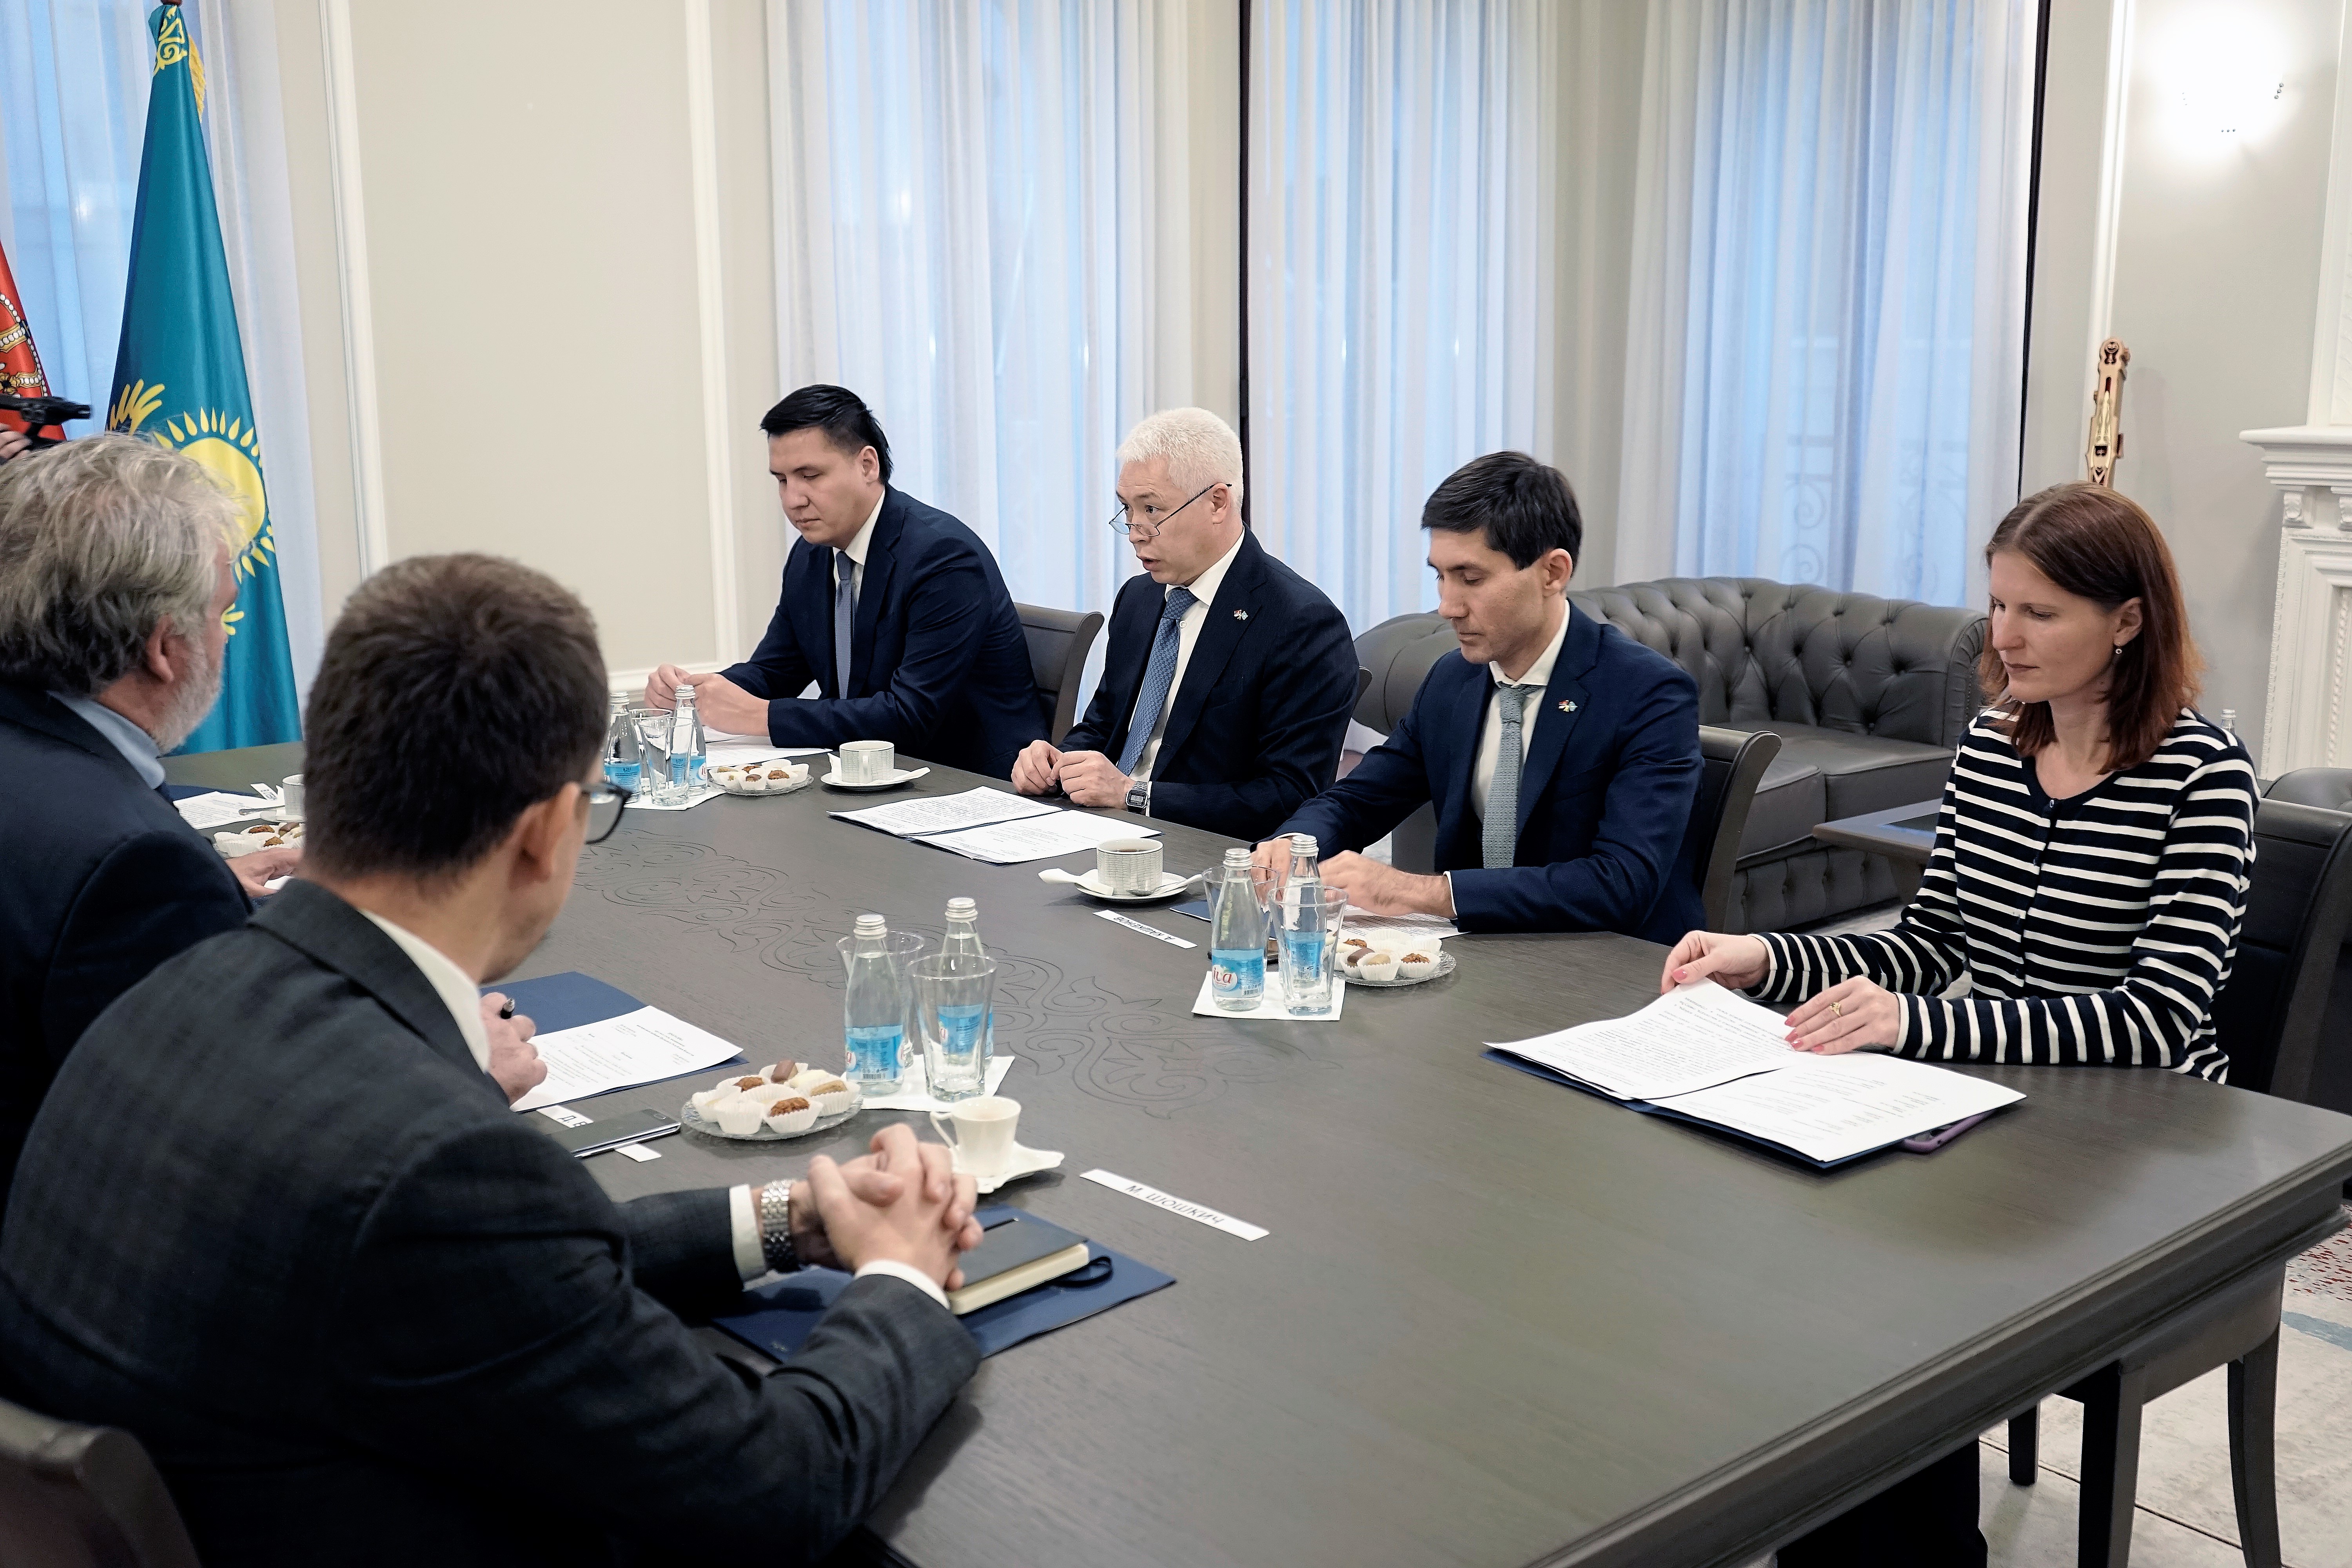 Српски експерти су се упознали са током реформе  политичког система Казахстана